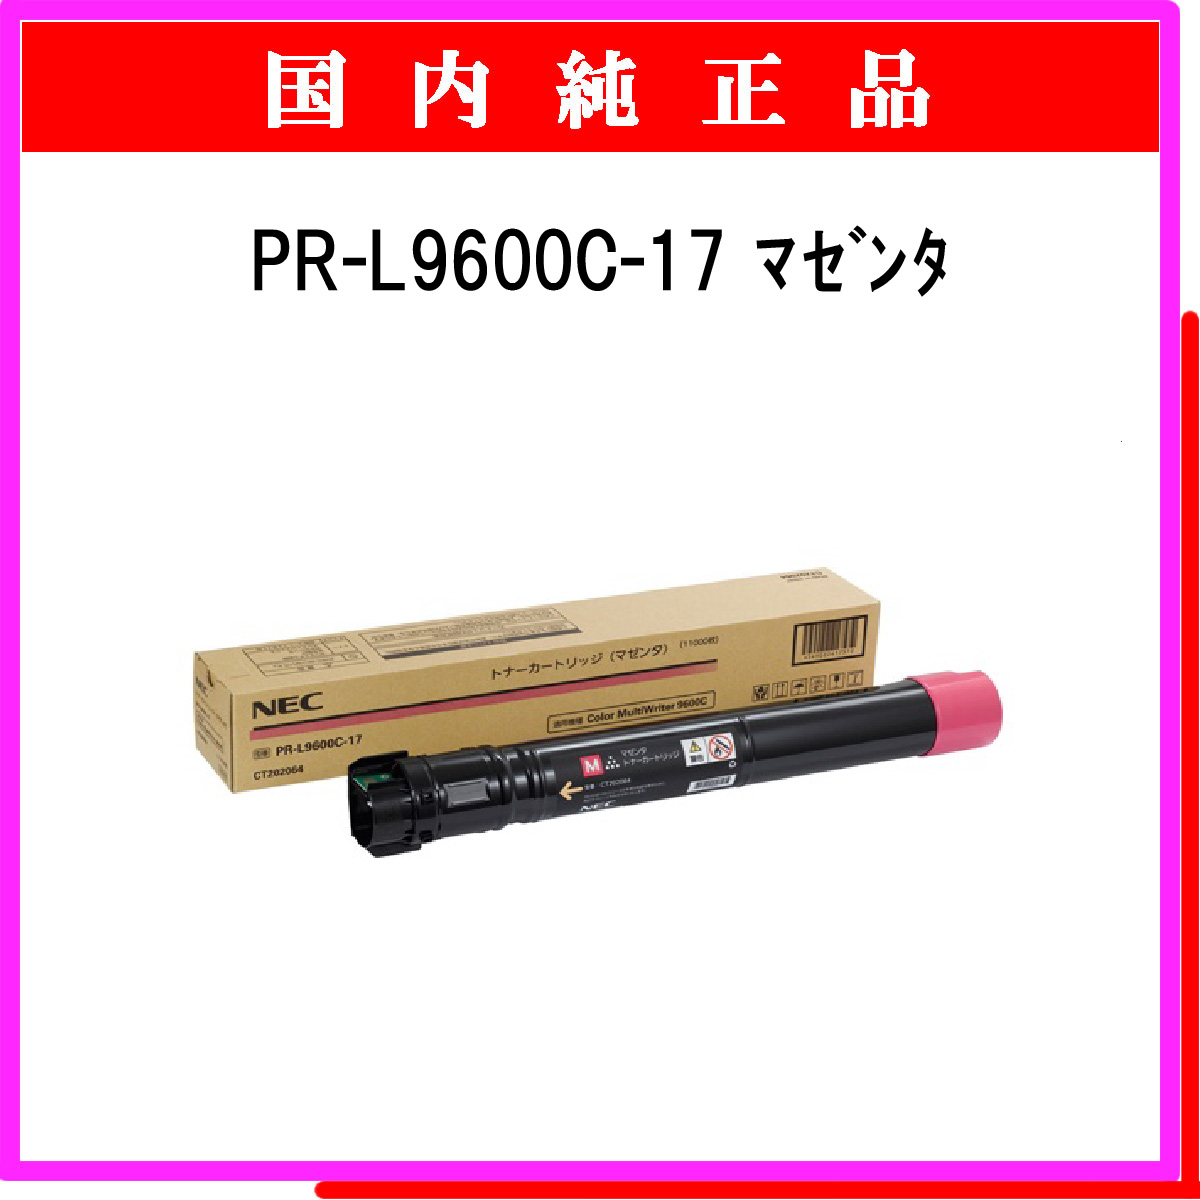 PR-L9600C-17 (大容量) 純正